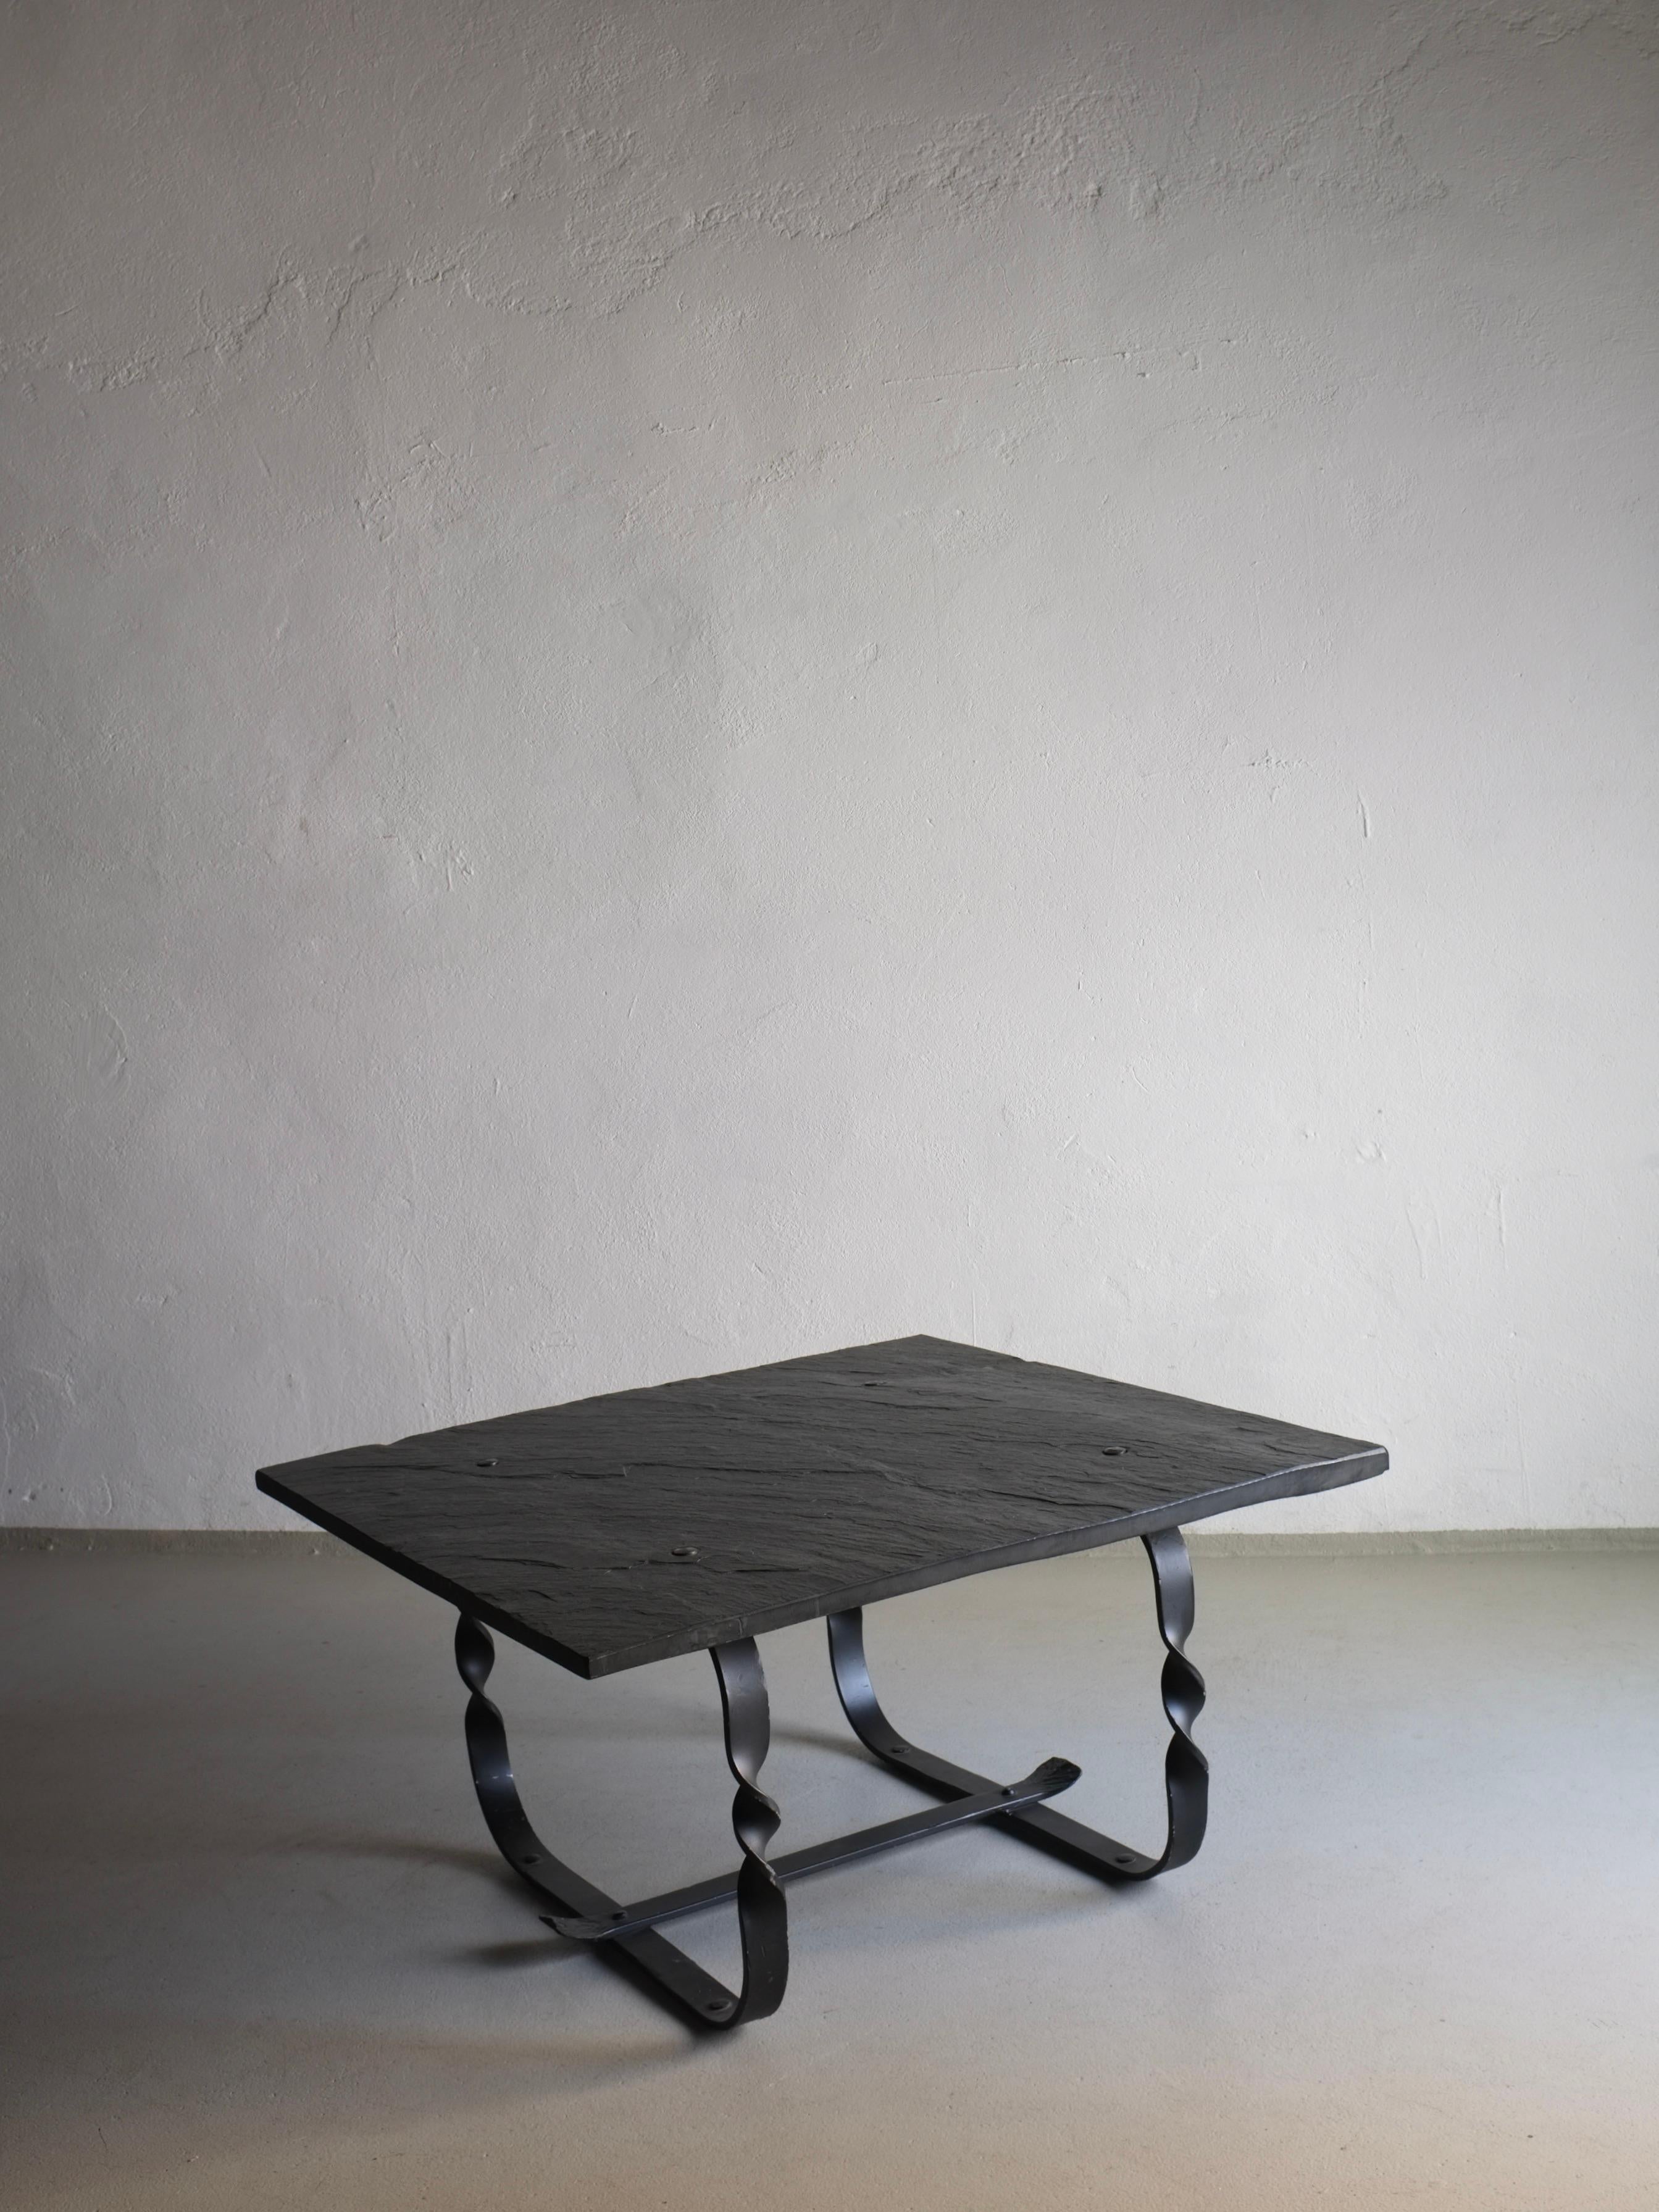 Schwarze Tischplatte aus Wabi Sabi-Stein mit geschmiedetem Metallgestell. Ein gewichtiger Gegenstand.